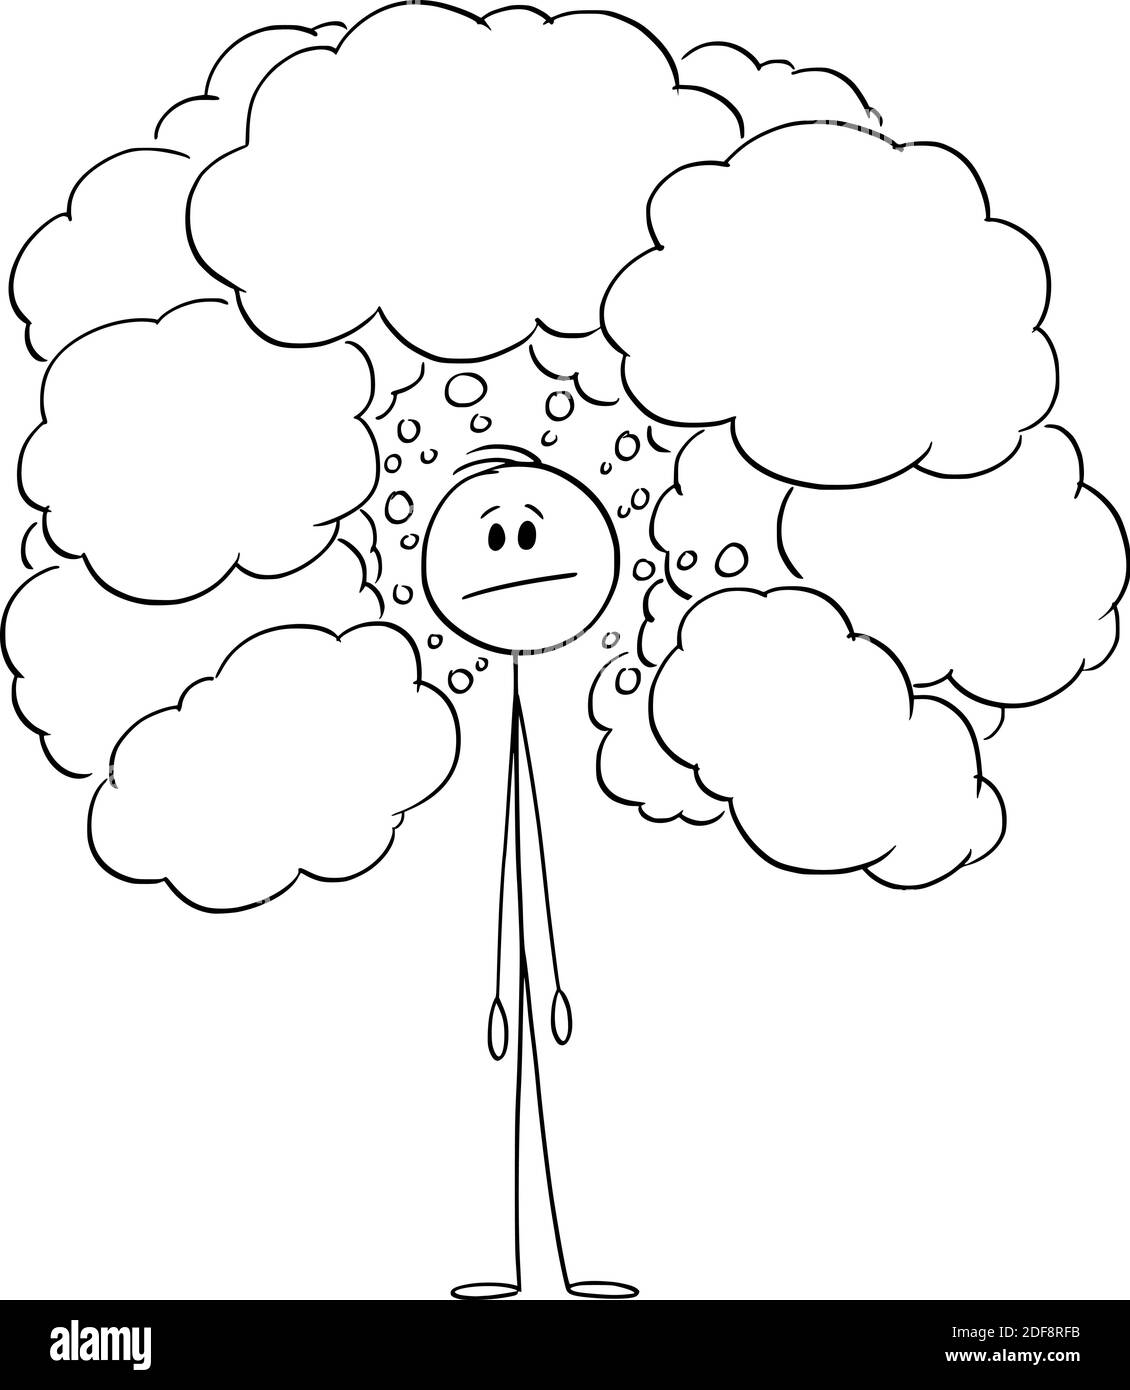 Immagine del cartoon vettoriale di figura del bastone di pensare l'uomo o l'uomo d'affari con i palloncini di parola vuoti o le bolle di testo intorno. Illustrazione Vettoriale